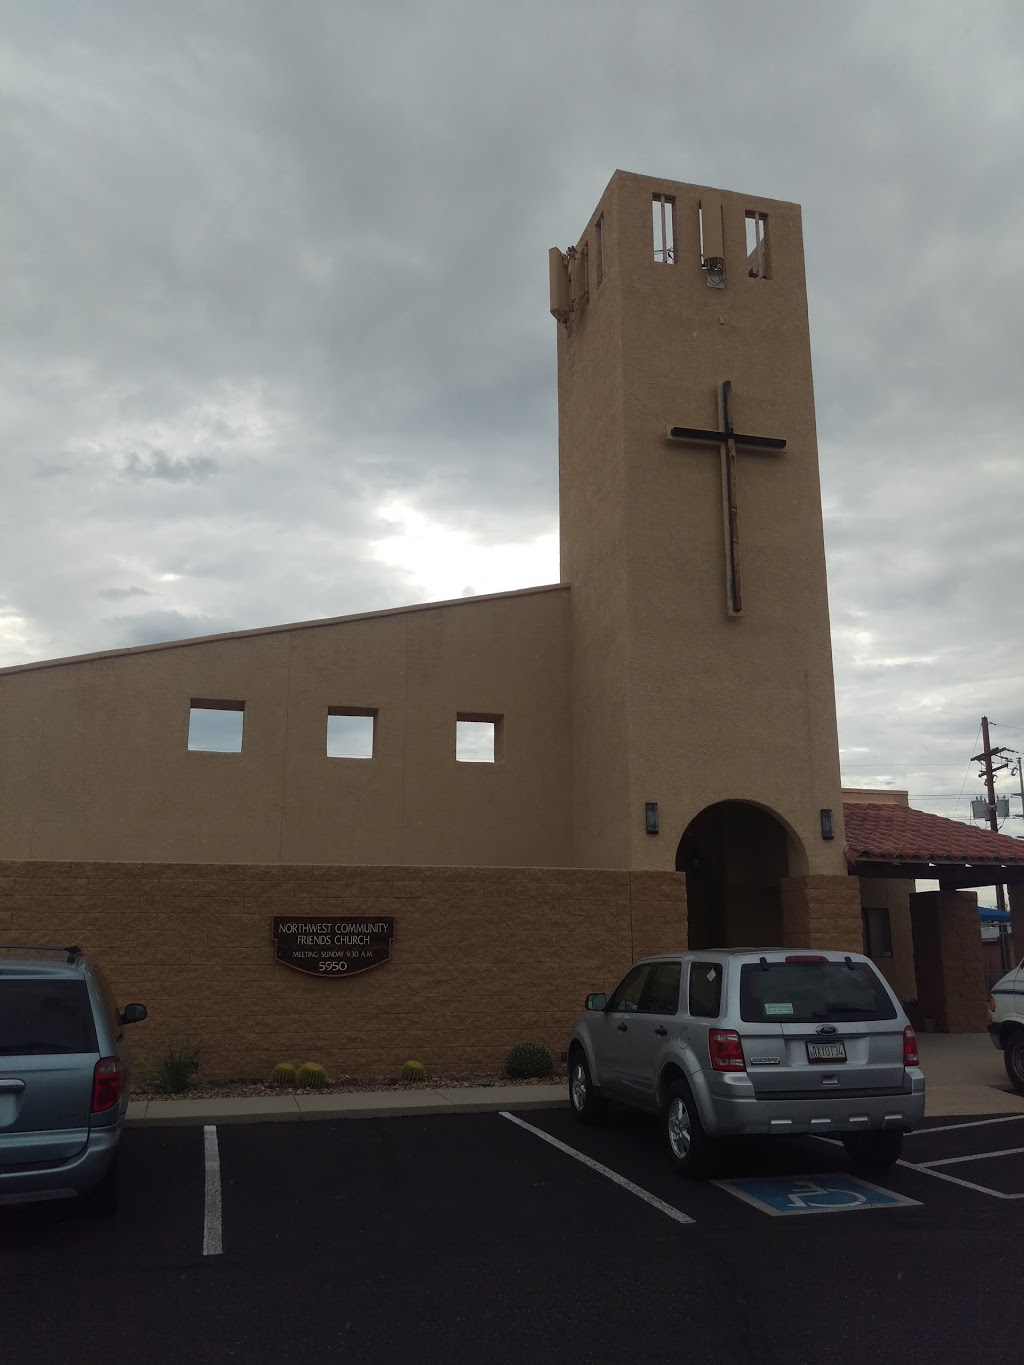 Northwest Community Friends Church | 5950 N La Cañada Dr, Tucson, AZ 85704, USA | Phone: (520) 887-2060